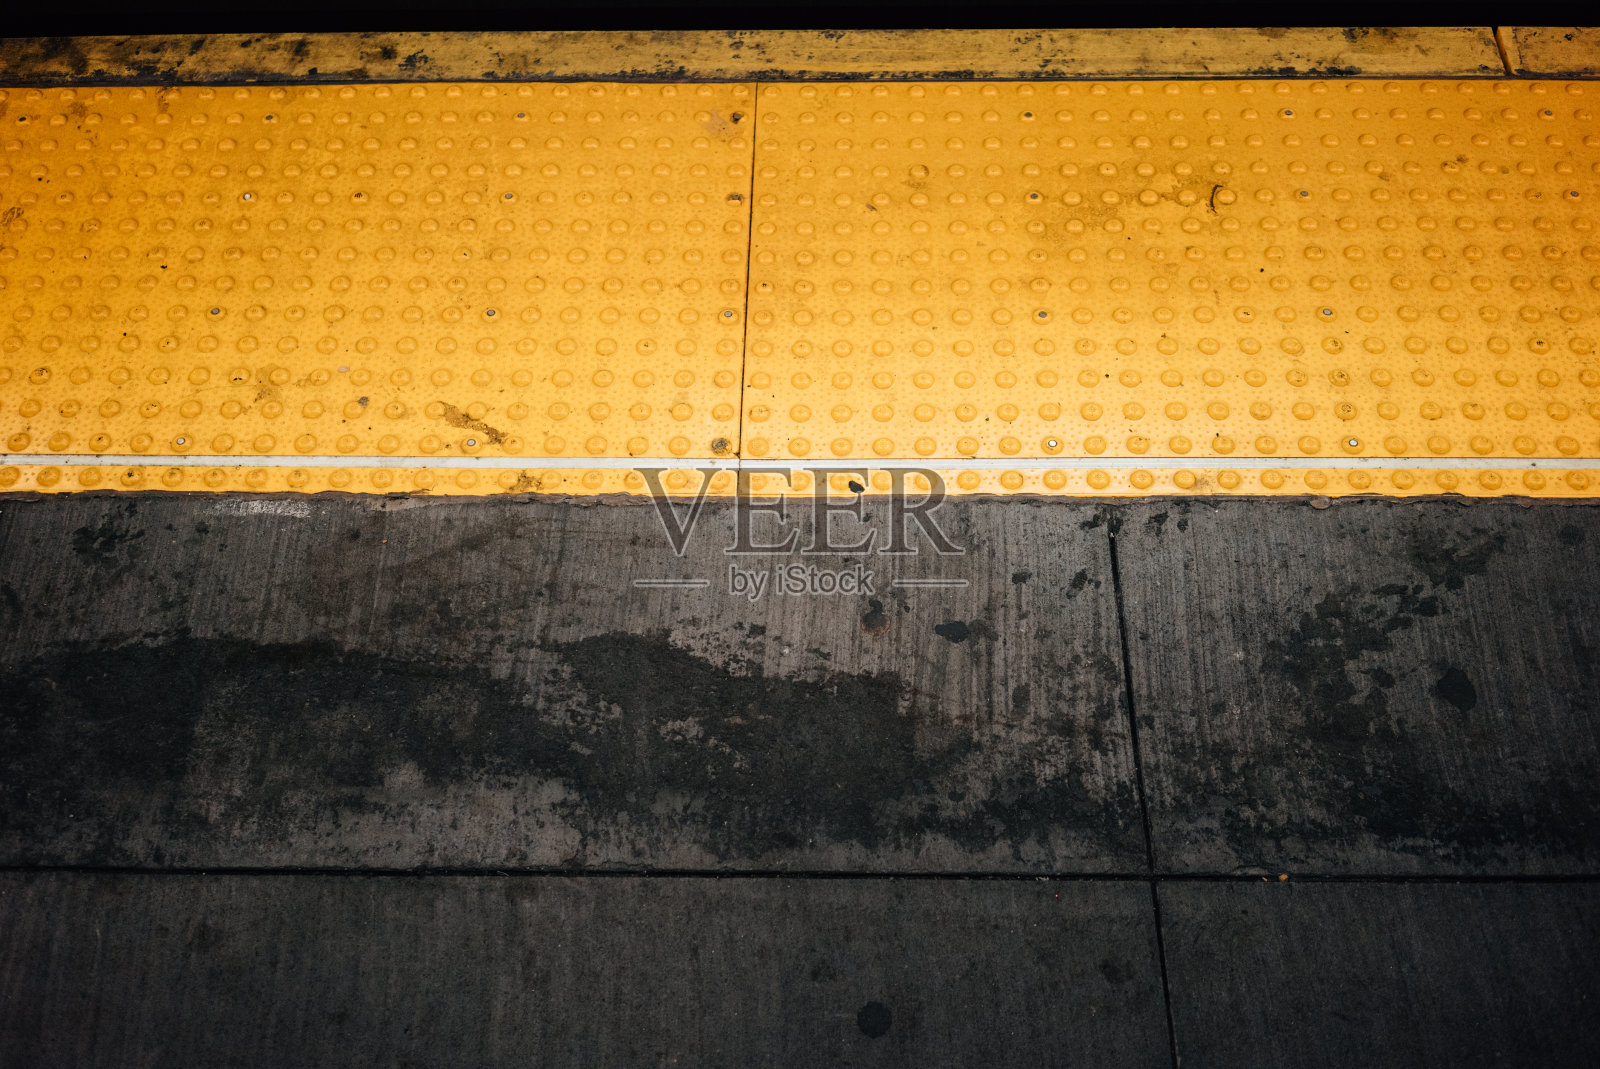 火车站月台边缘画着黄色的缺口照片摄影图片